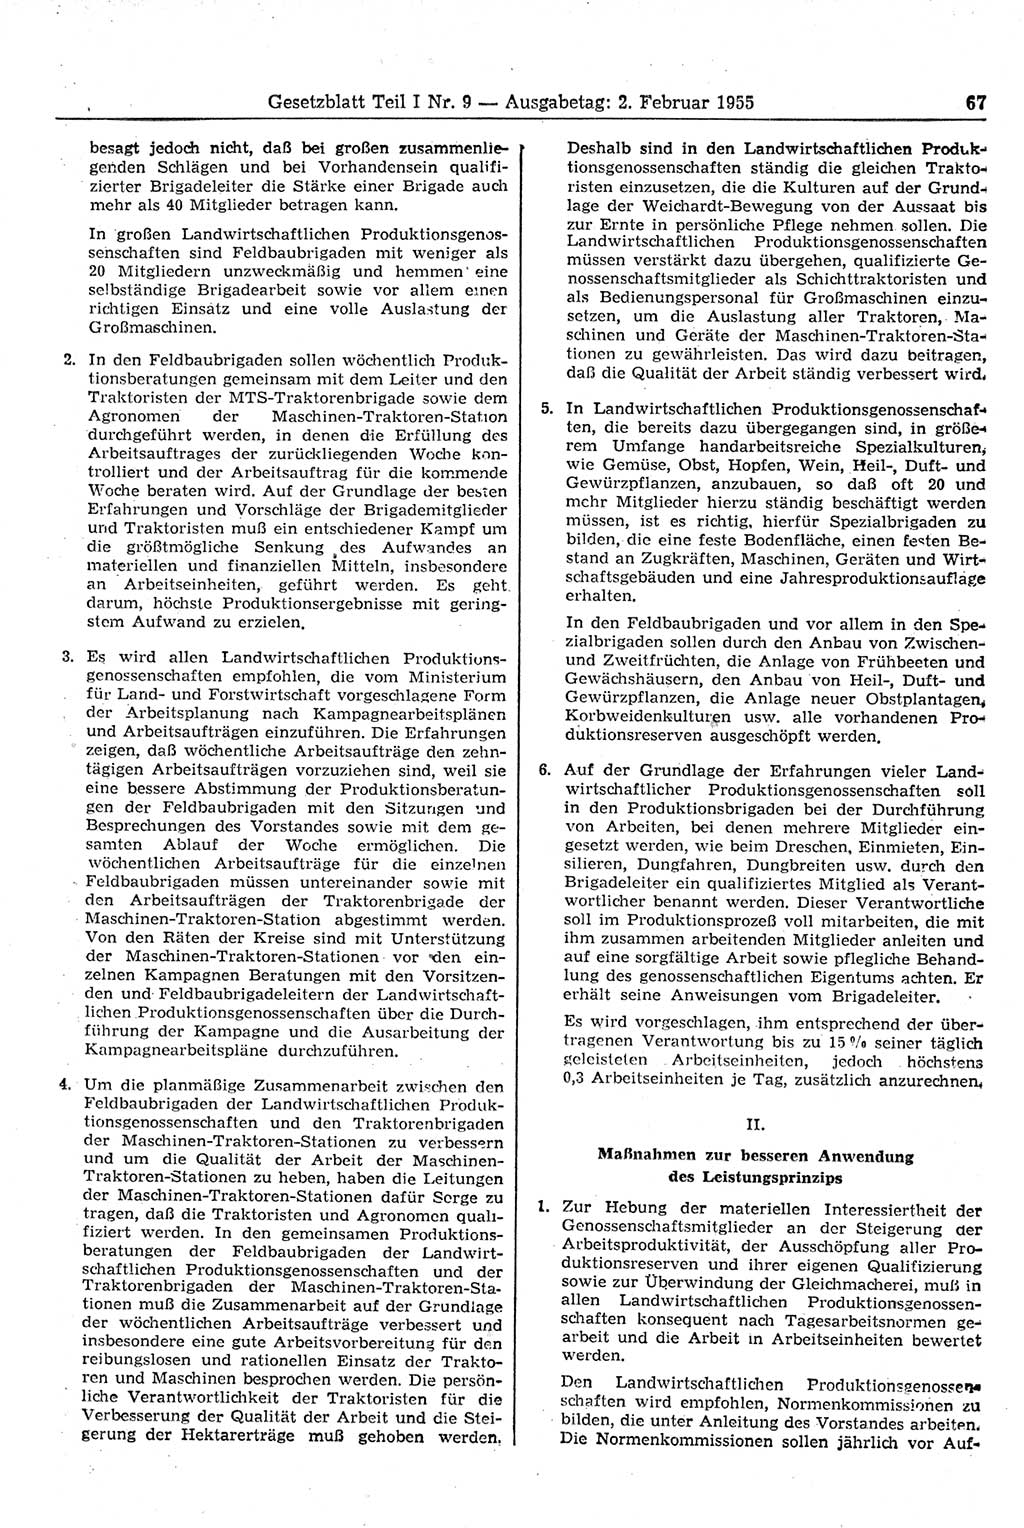 Gesetzblatt (GBl.) der Deutschen Demokratischen Republik (DDR) Teil Ⅰ 1955, Seite 67 (GBl. DDR Ⅰ 1955, S. 67)